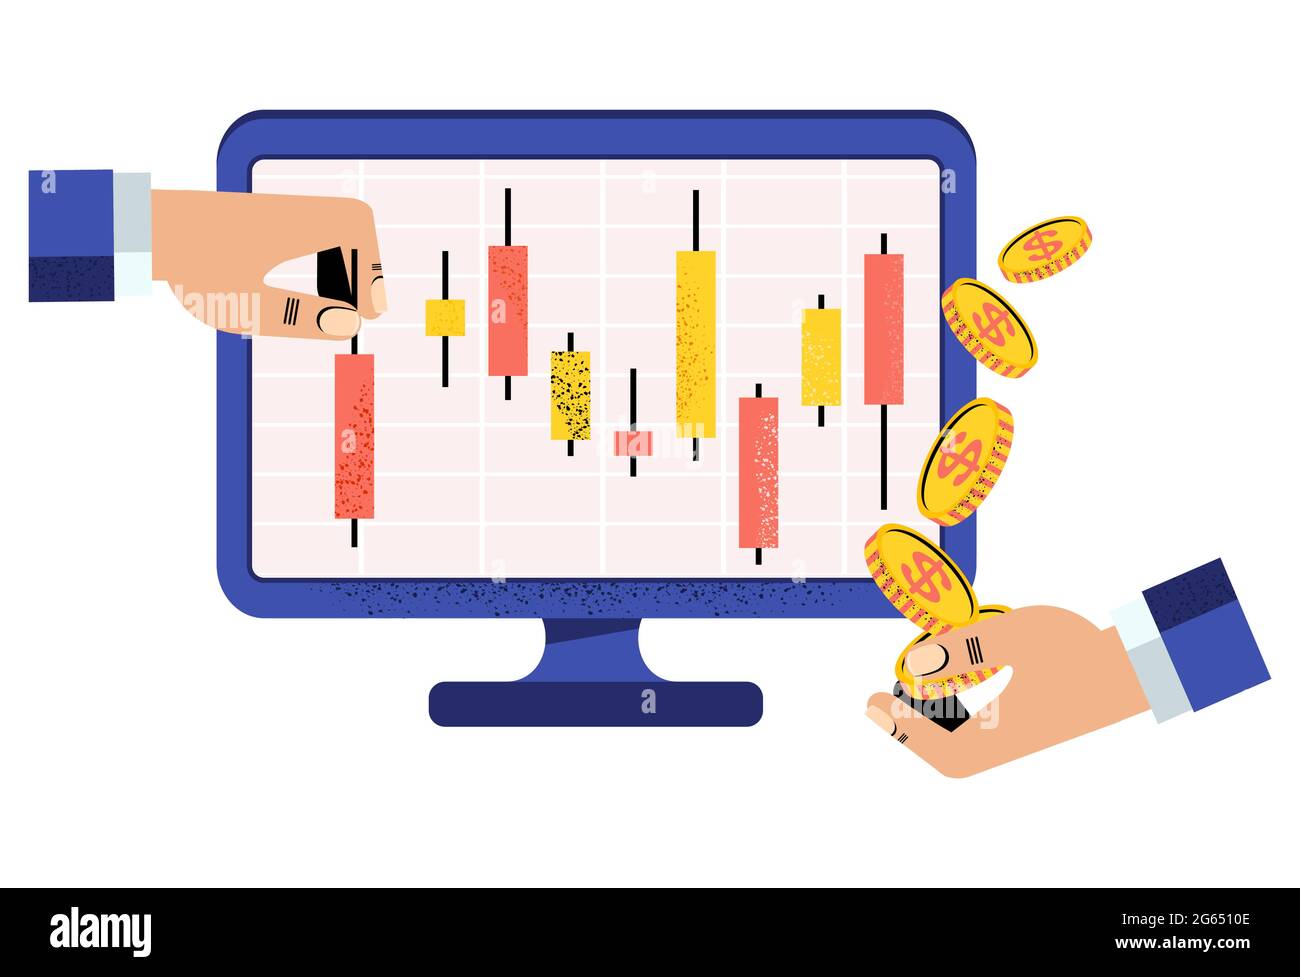 Online Stock broker. Japanese candlestick chart. Financial market. Stock Vector